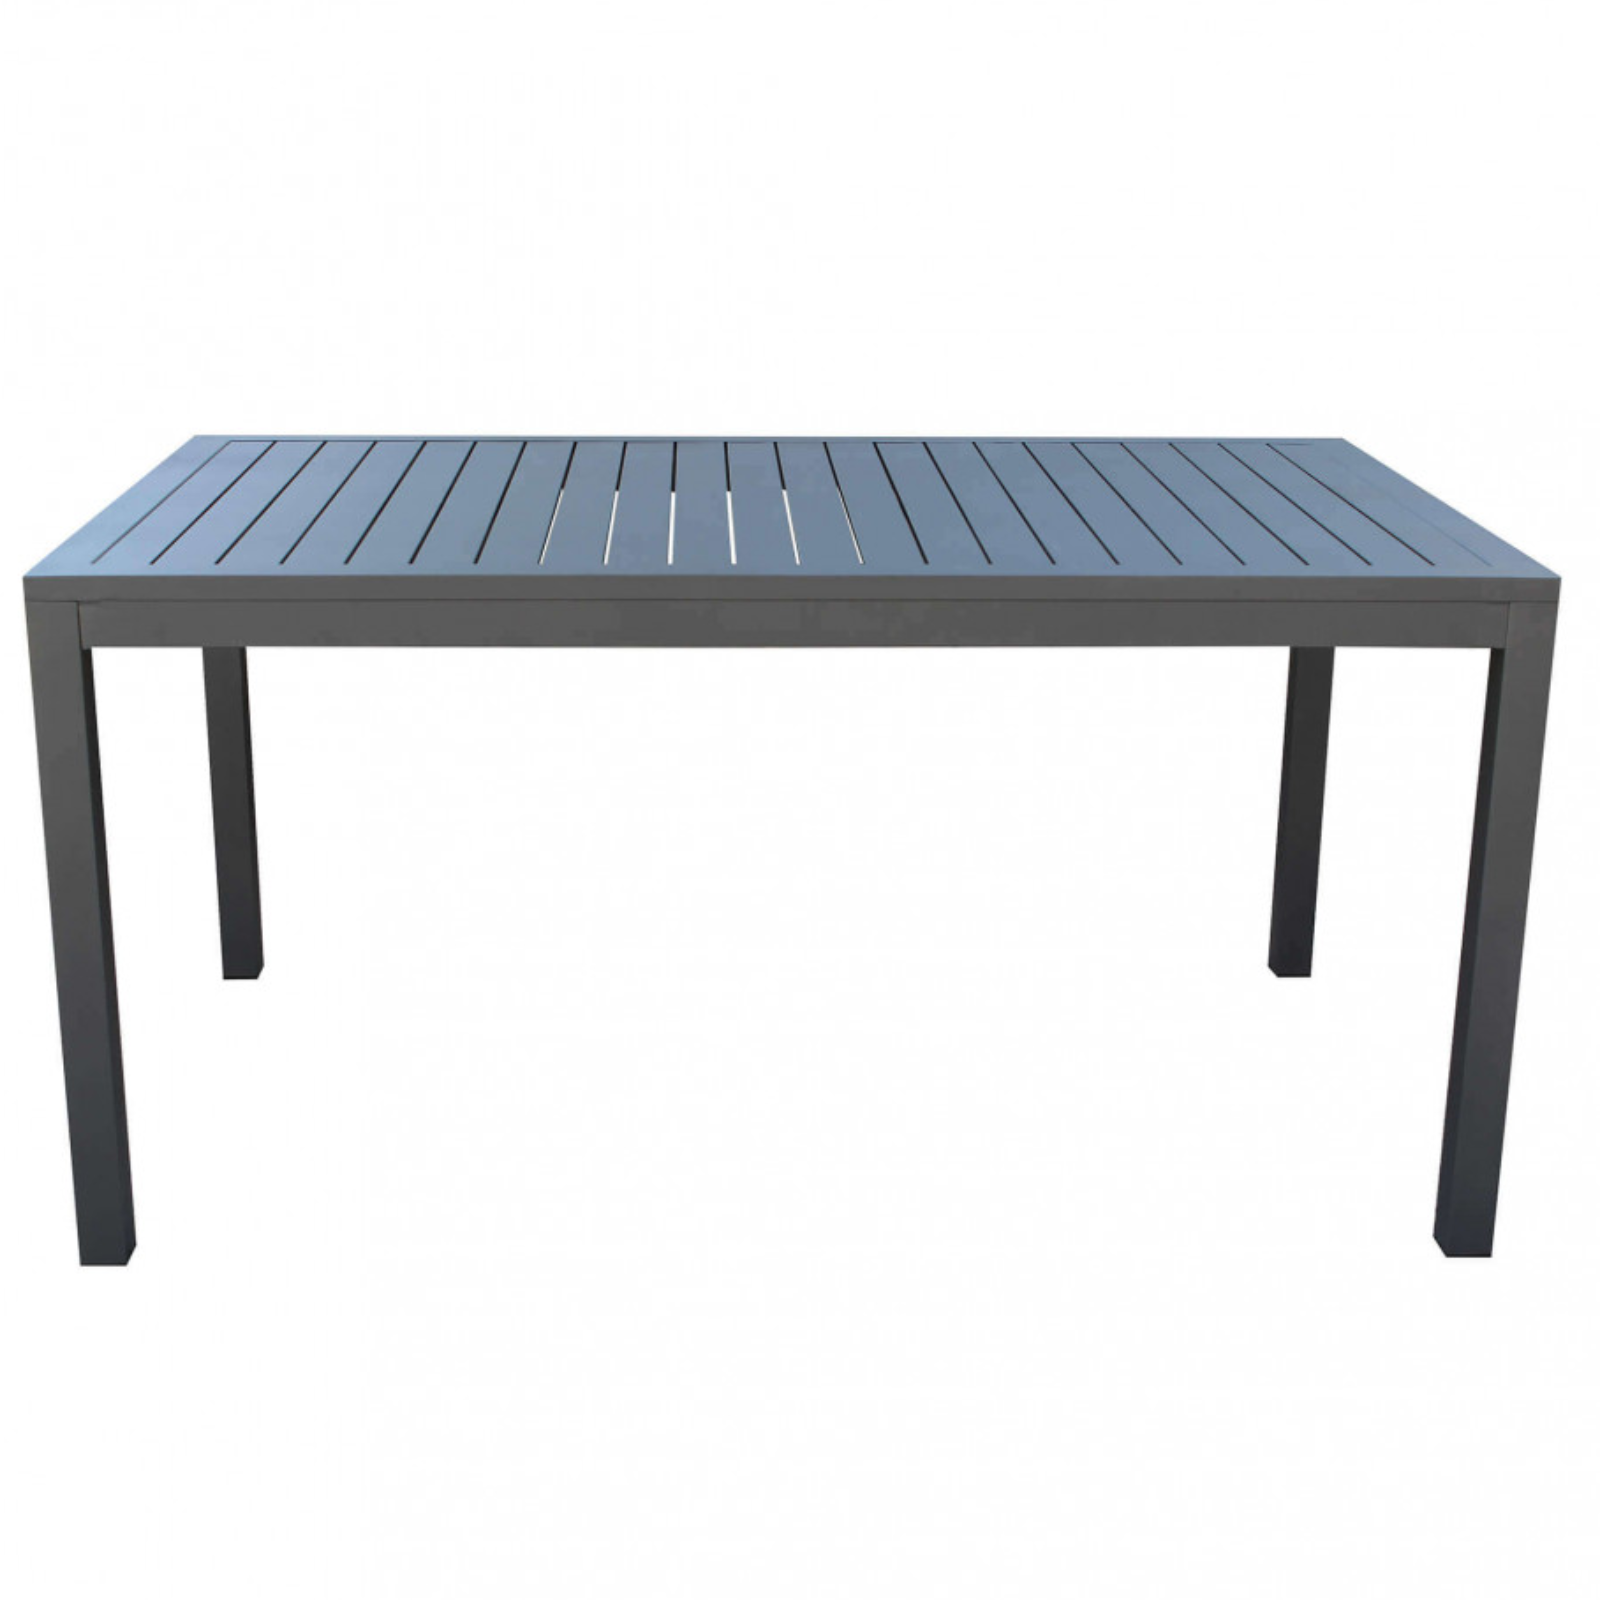 Tavolo in alluminio antracite 150x90 design moderno con piano a doghe da esterno o interno - Millo